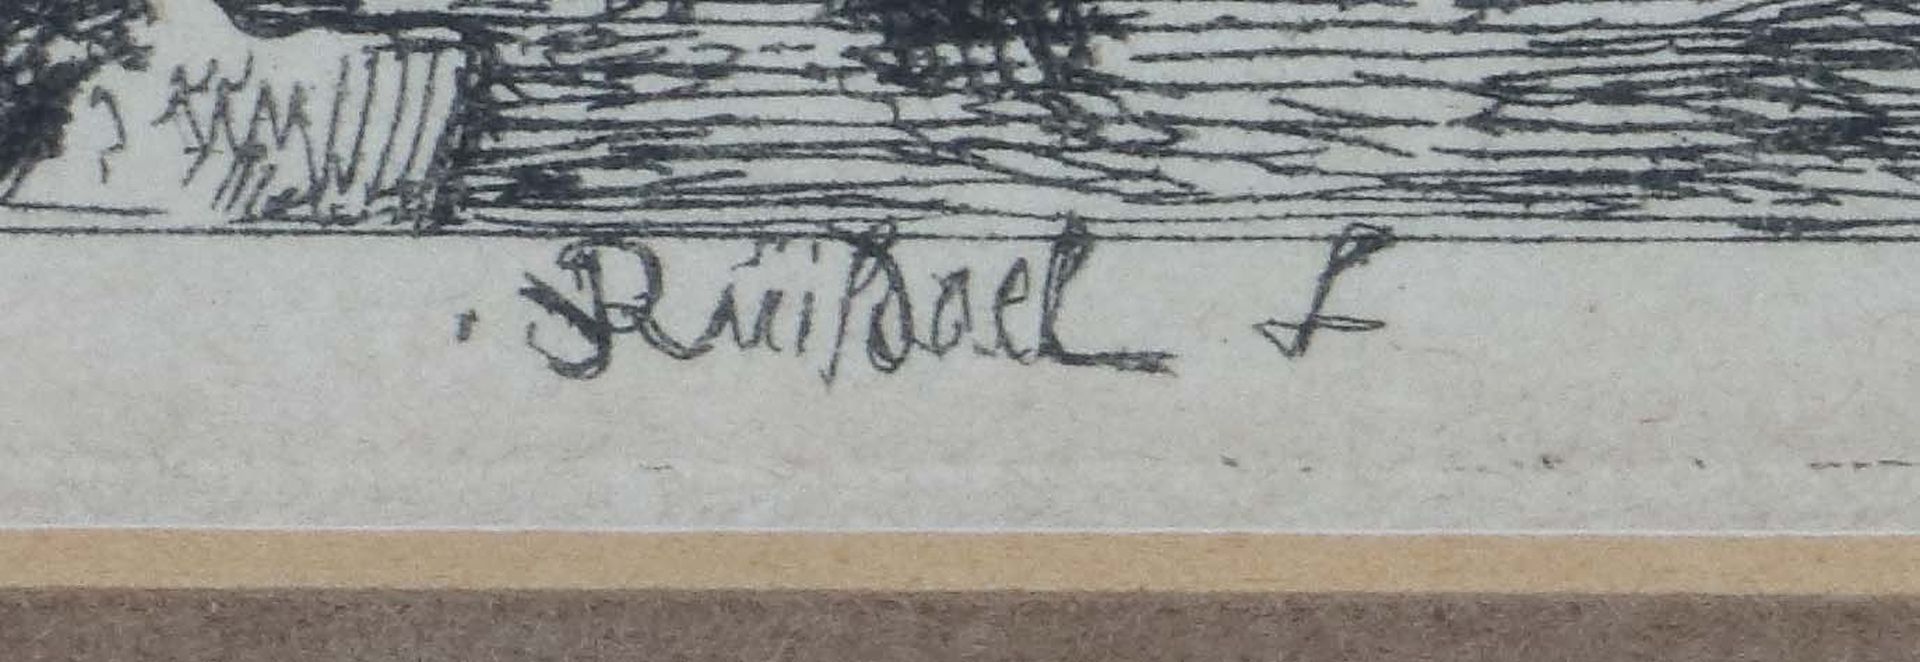 Riusdael, Jacob Isaakszoon van Haarlem - Image 3 of 3